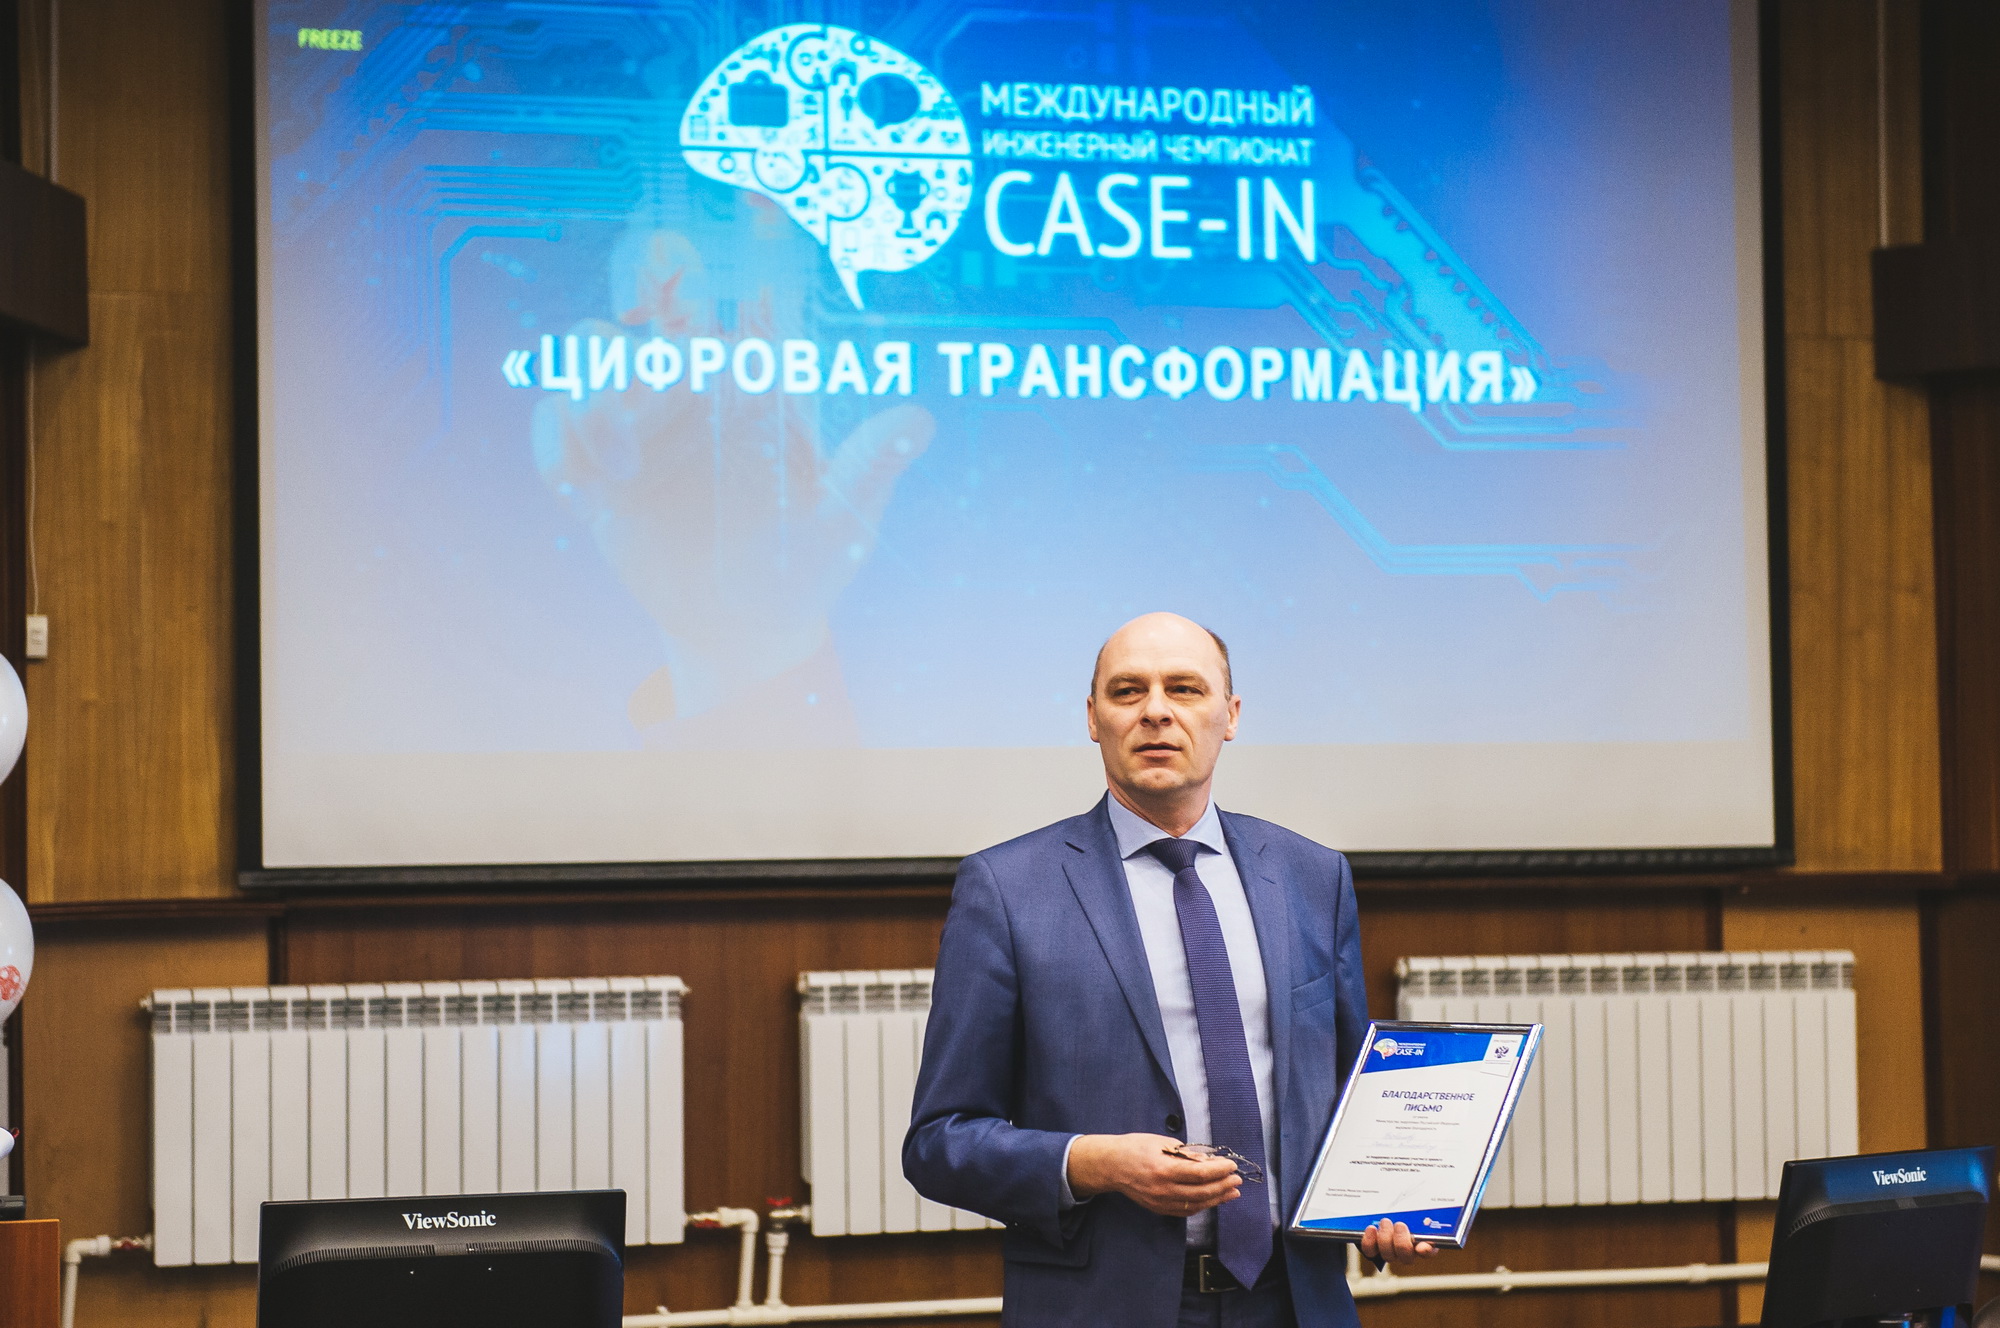 Международный инженерный чемпионат Case-In, фотография: К. Жуков